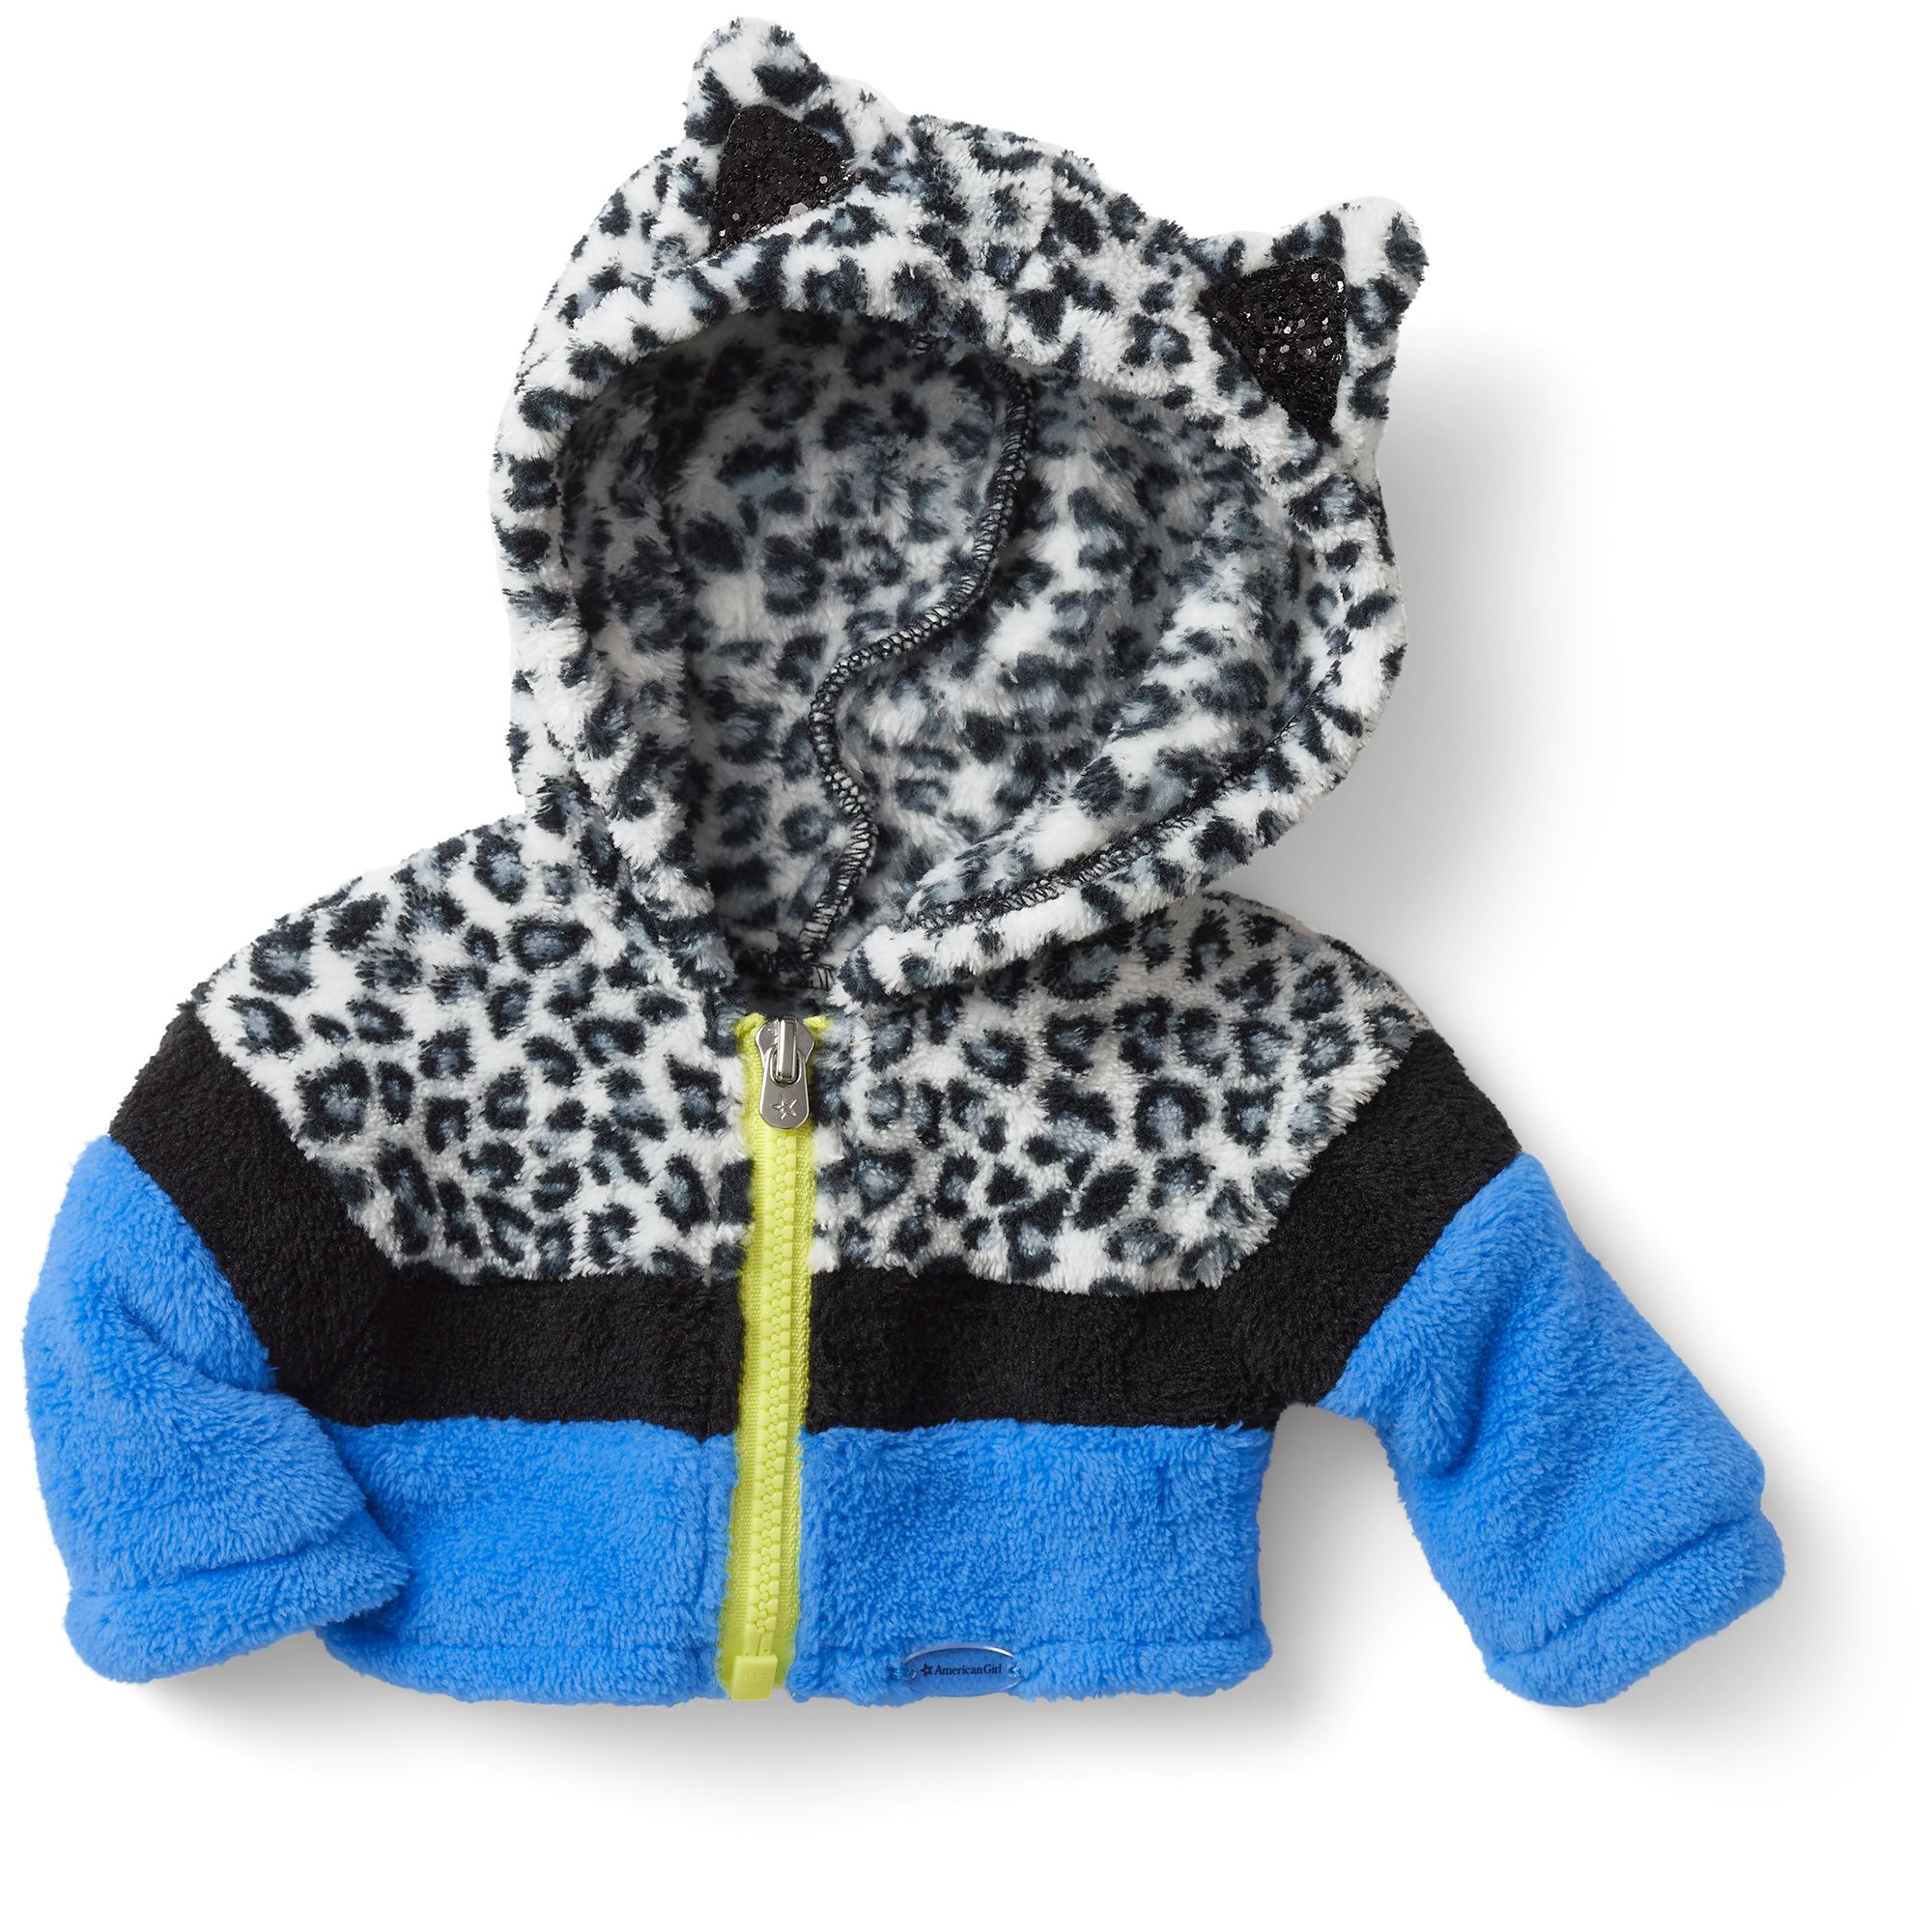 Hoodie-Footie™ - Snow Leopard  Fleece sleepwear, Hoodie footie, Hoodies